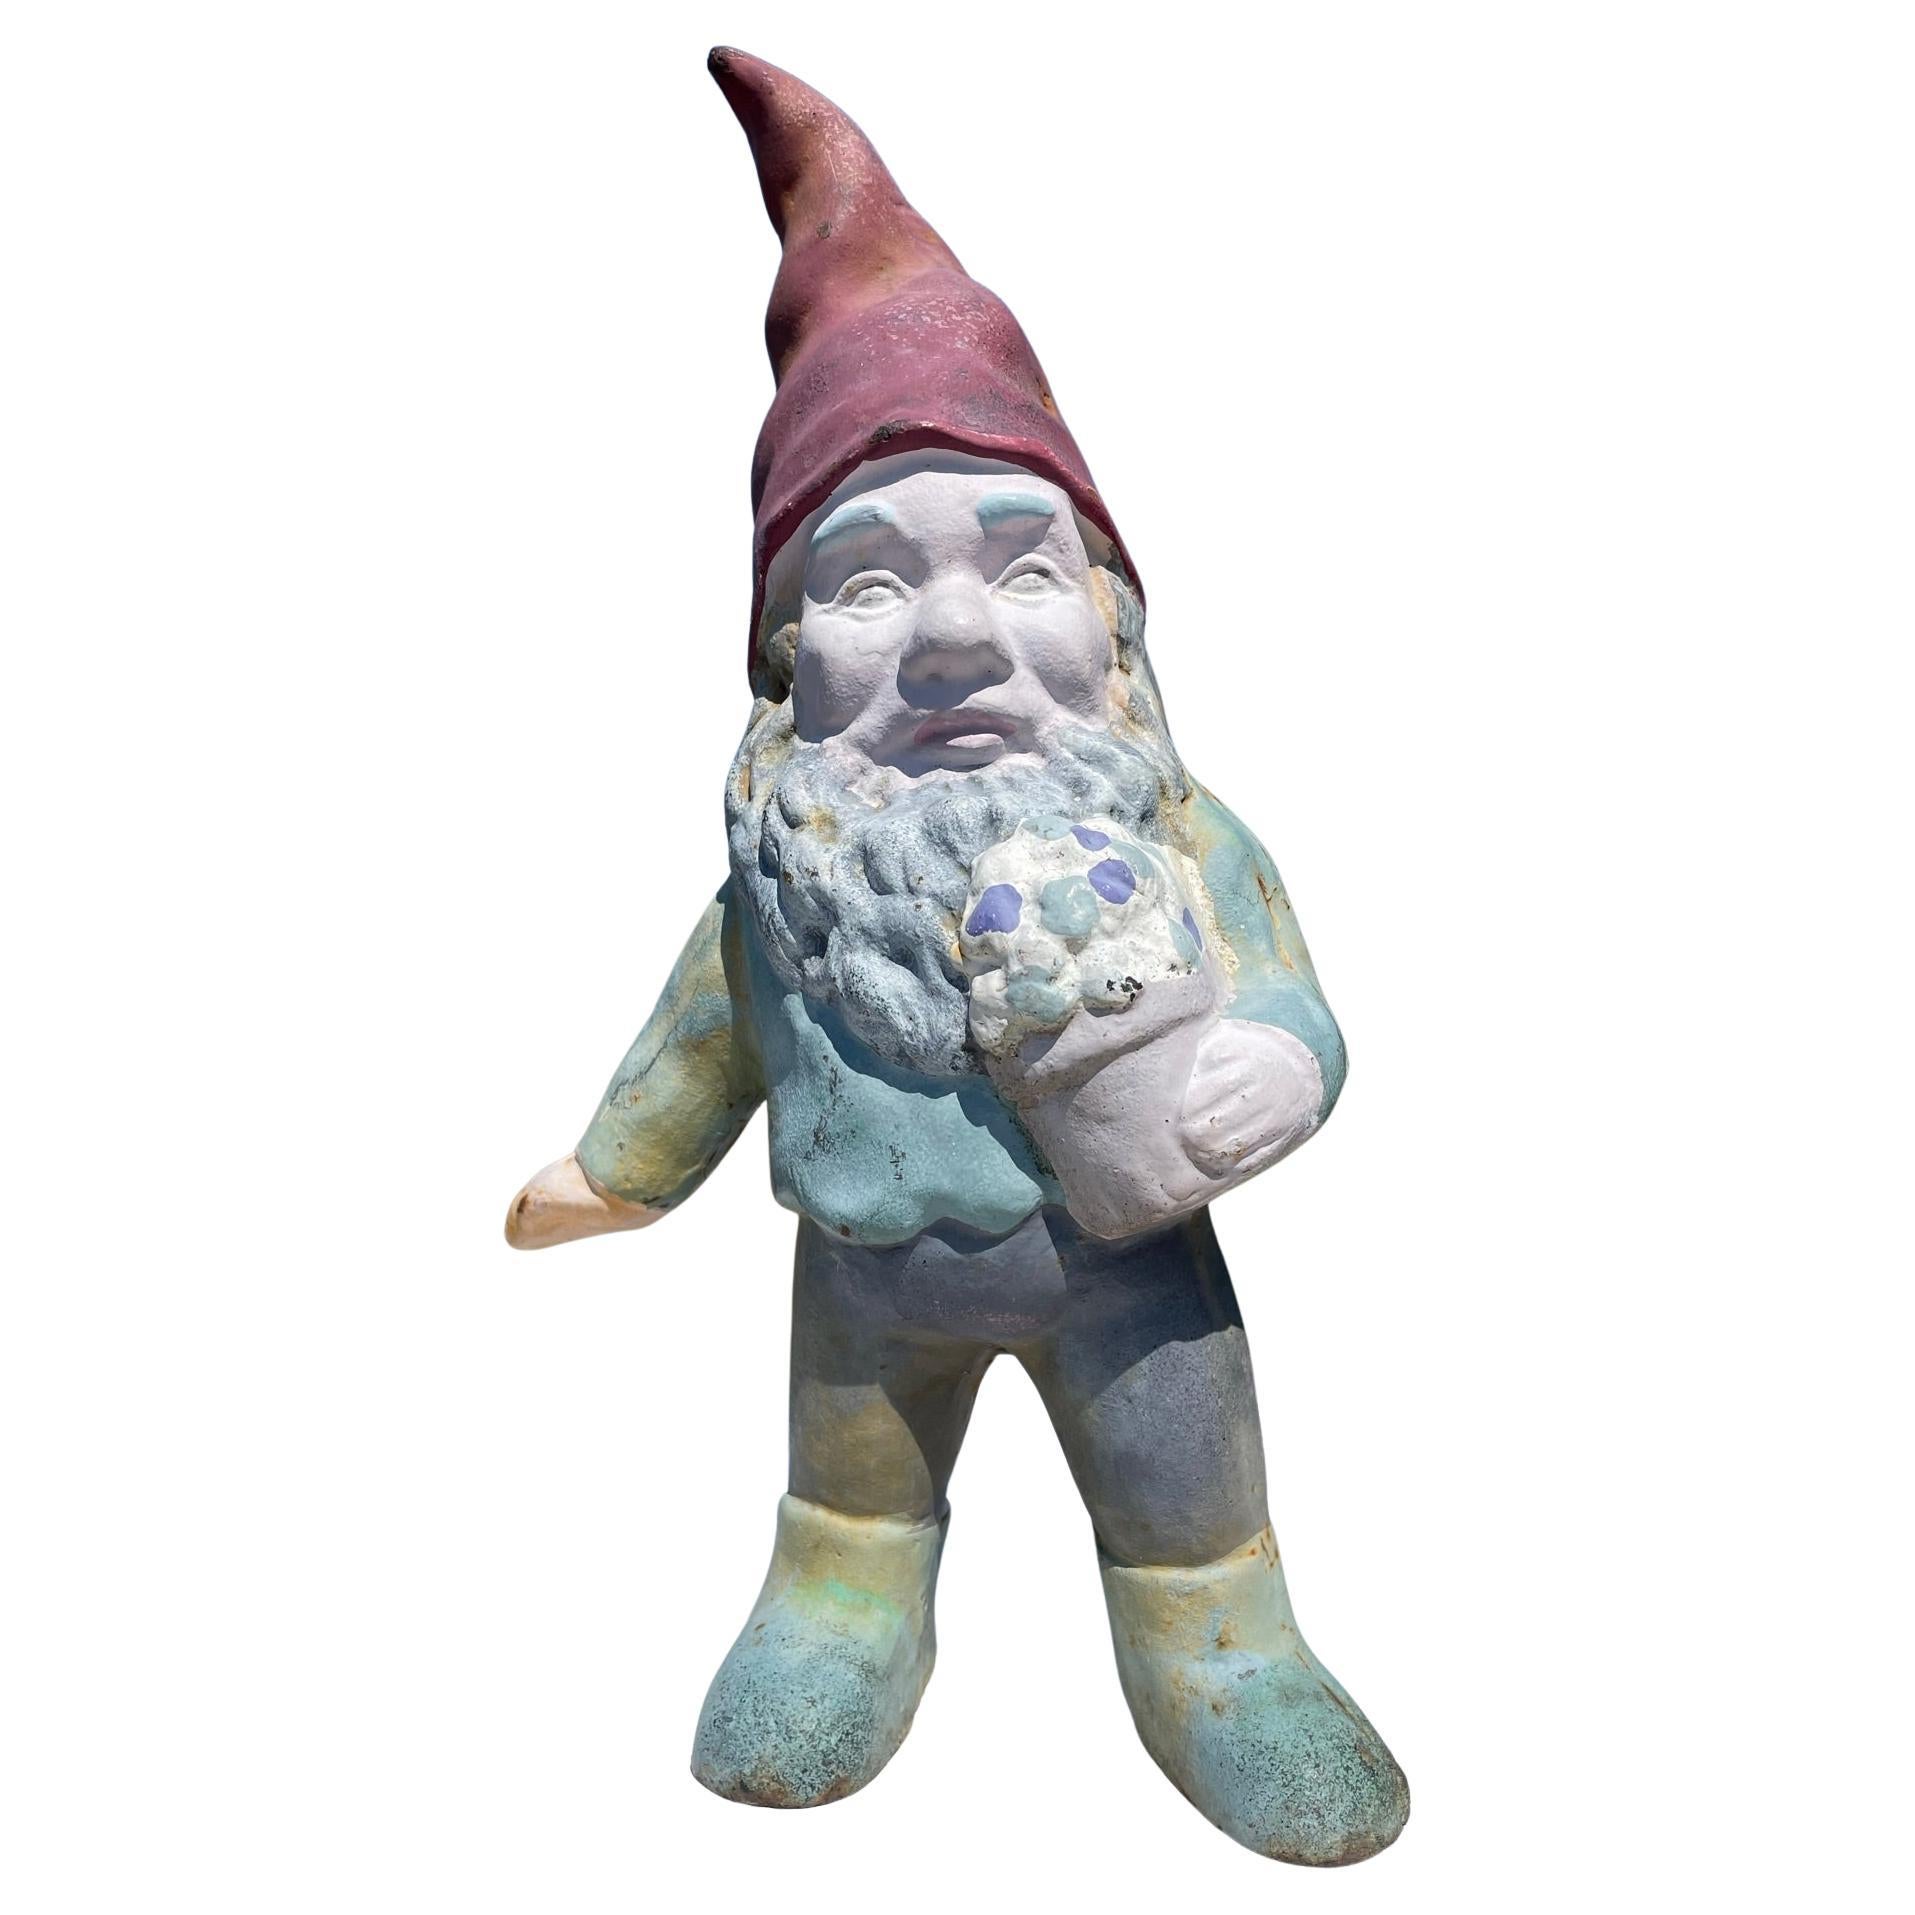 Gnome Garden Sculpture in Original Paint "Flower Pot"